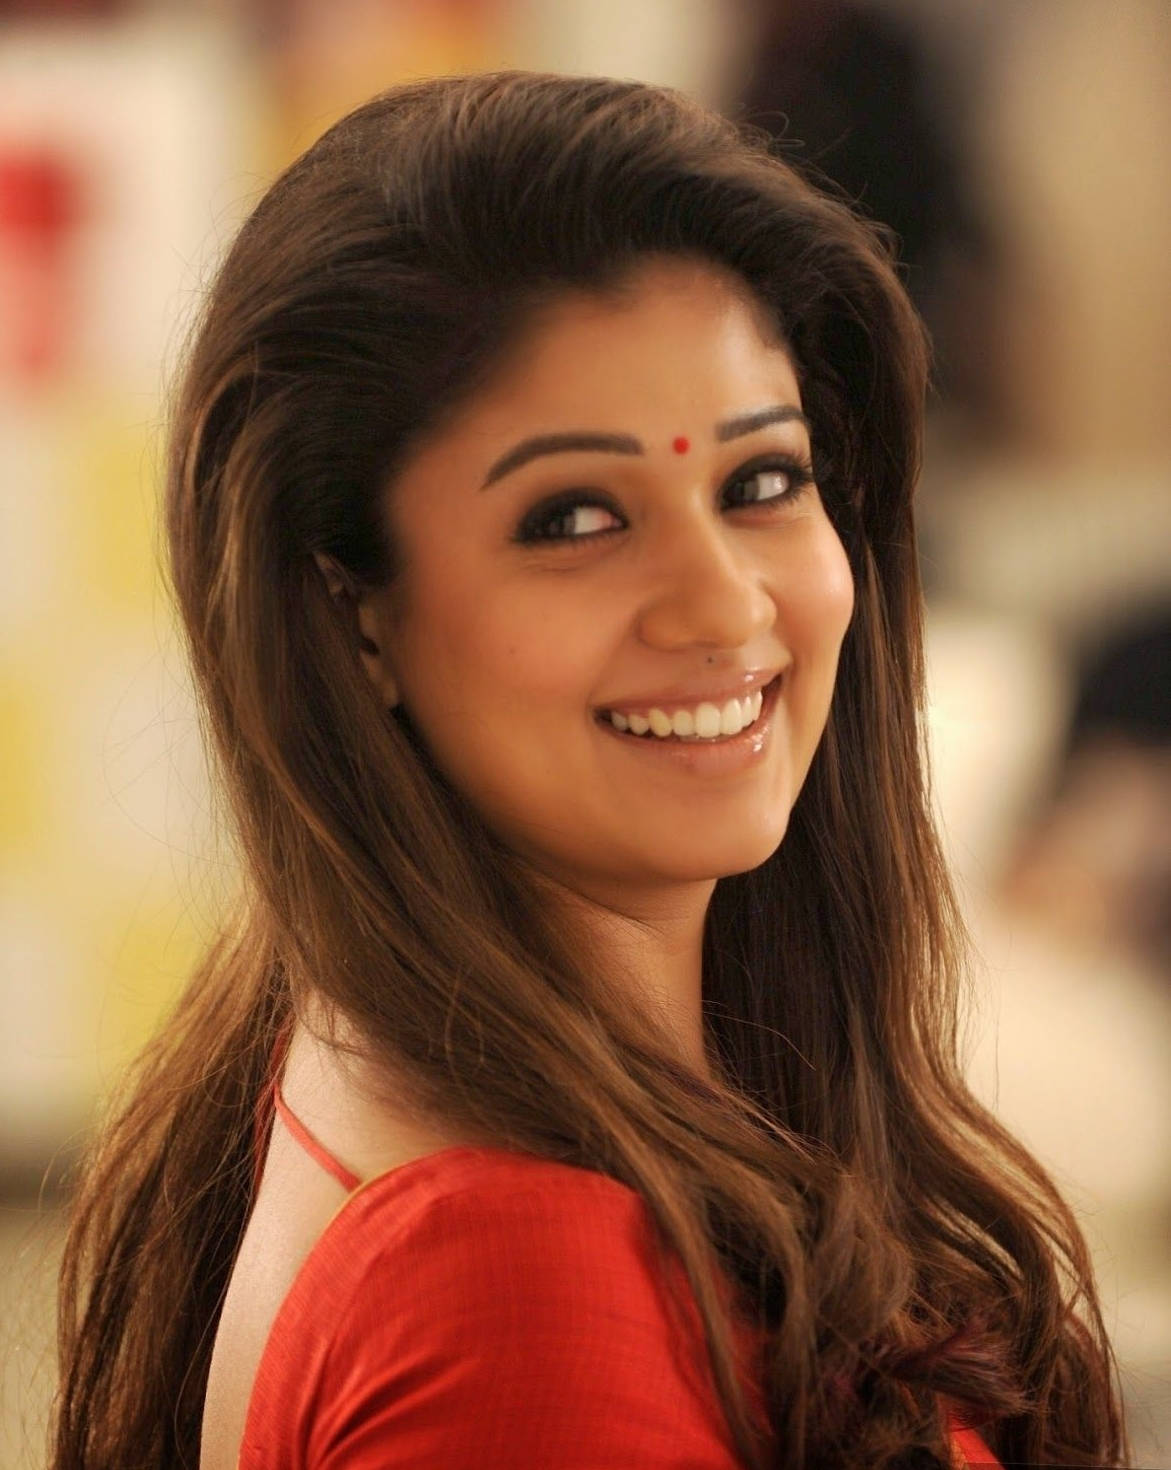 Nayanthara Smiling With Bindi Wallpaper